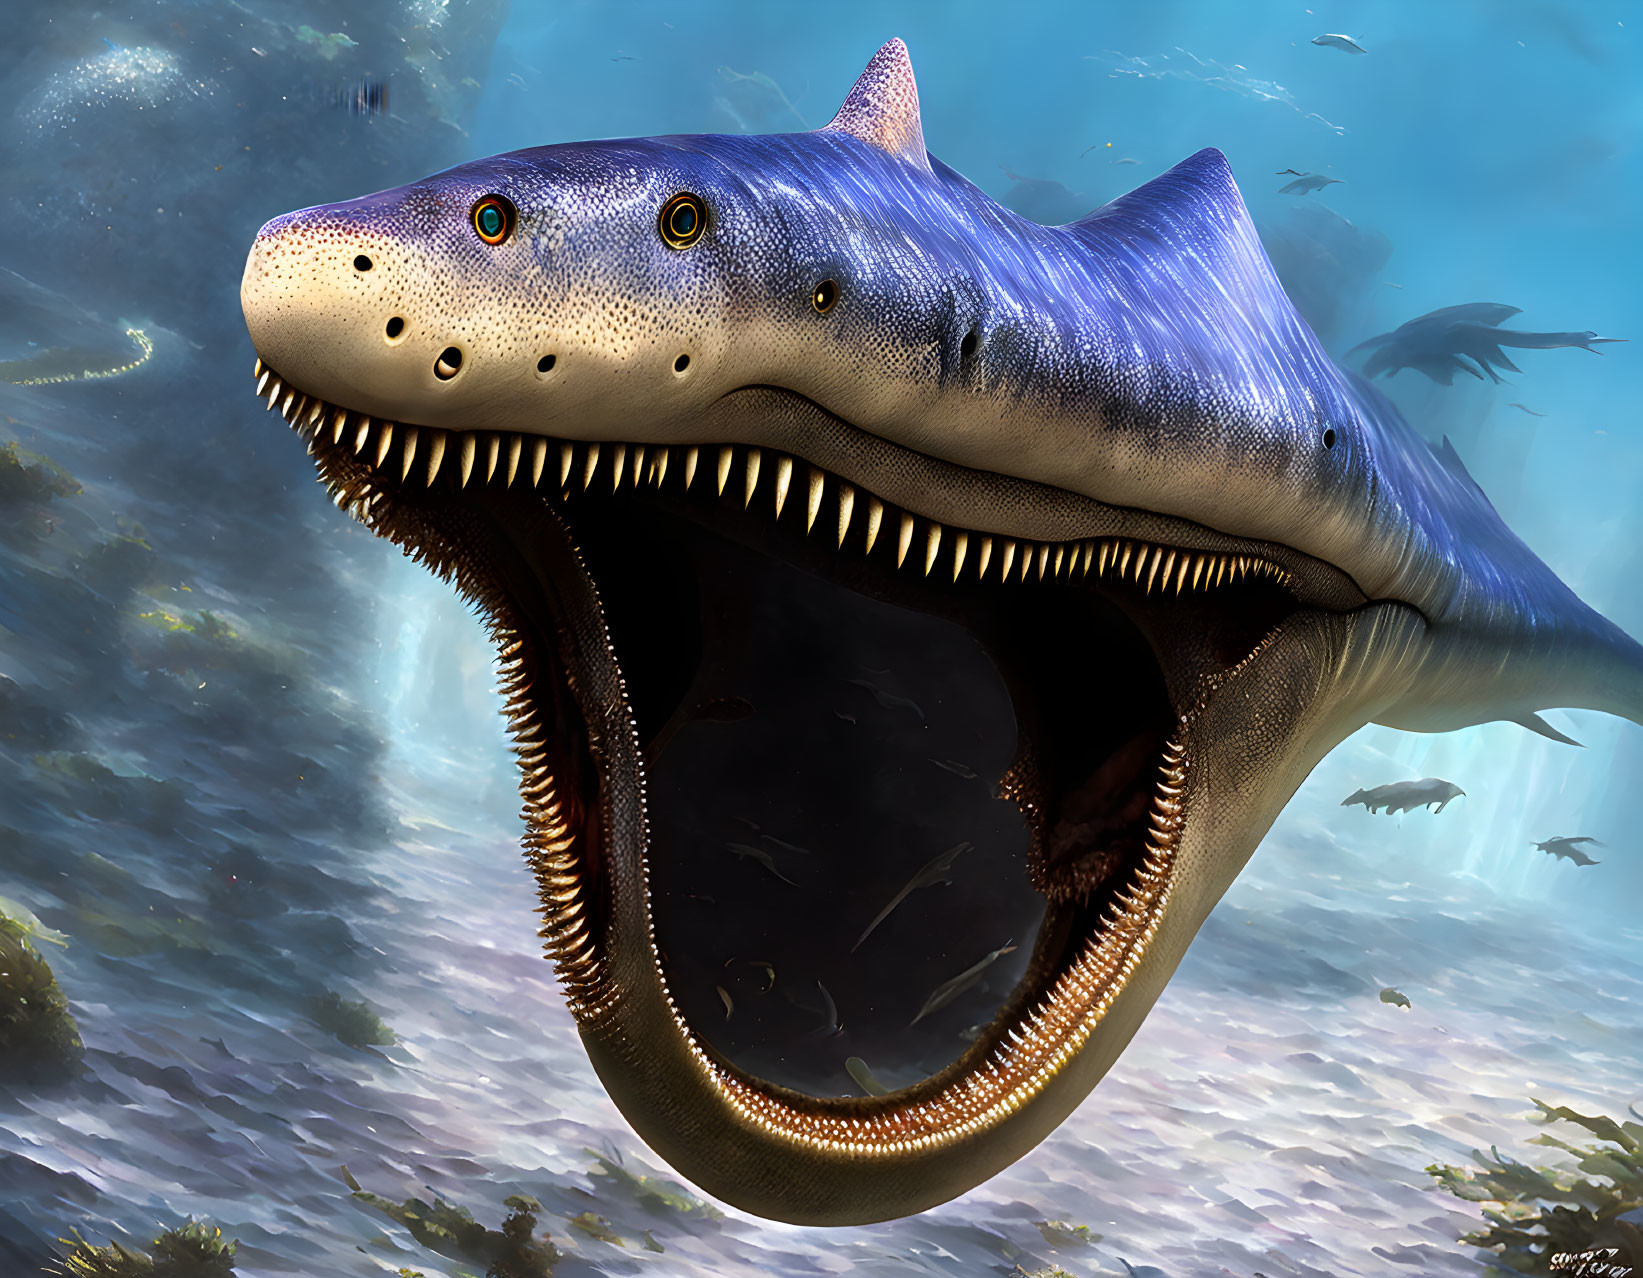 Massive prehistoric shark swimming with fish in underwater scene